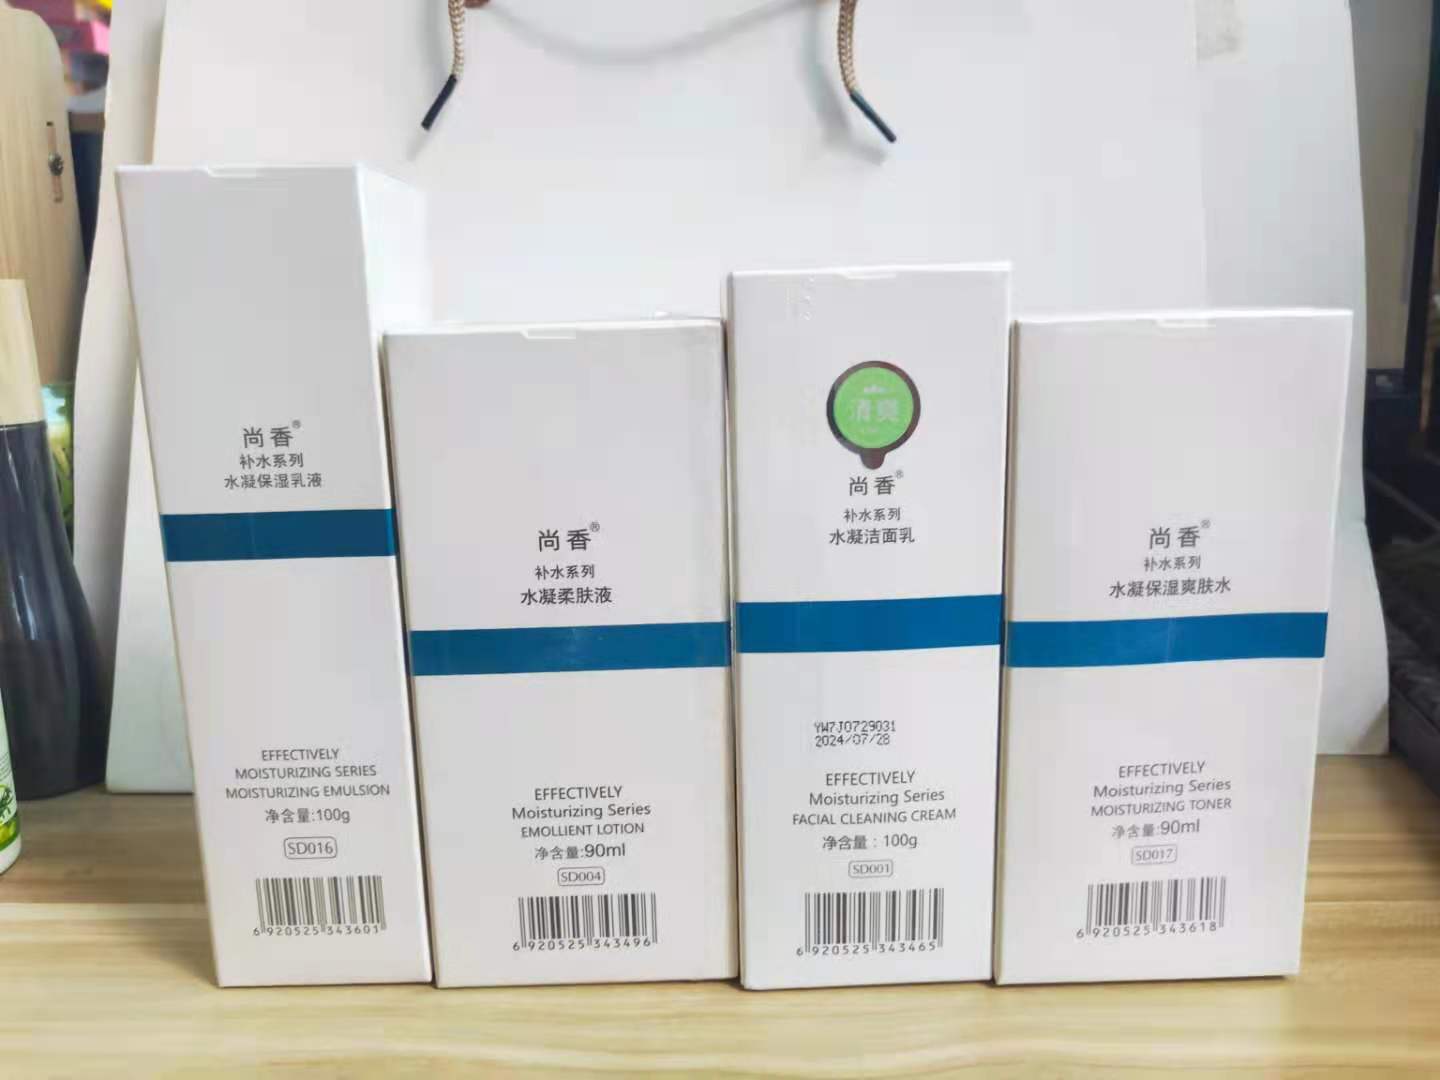 韩国尚香化妆品水凝系列“全套”所有肤质都可用补水保湿滋润正品